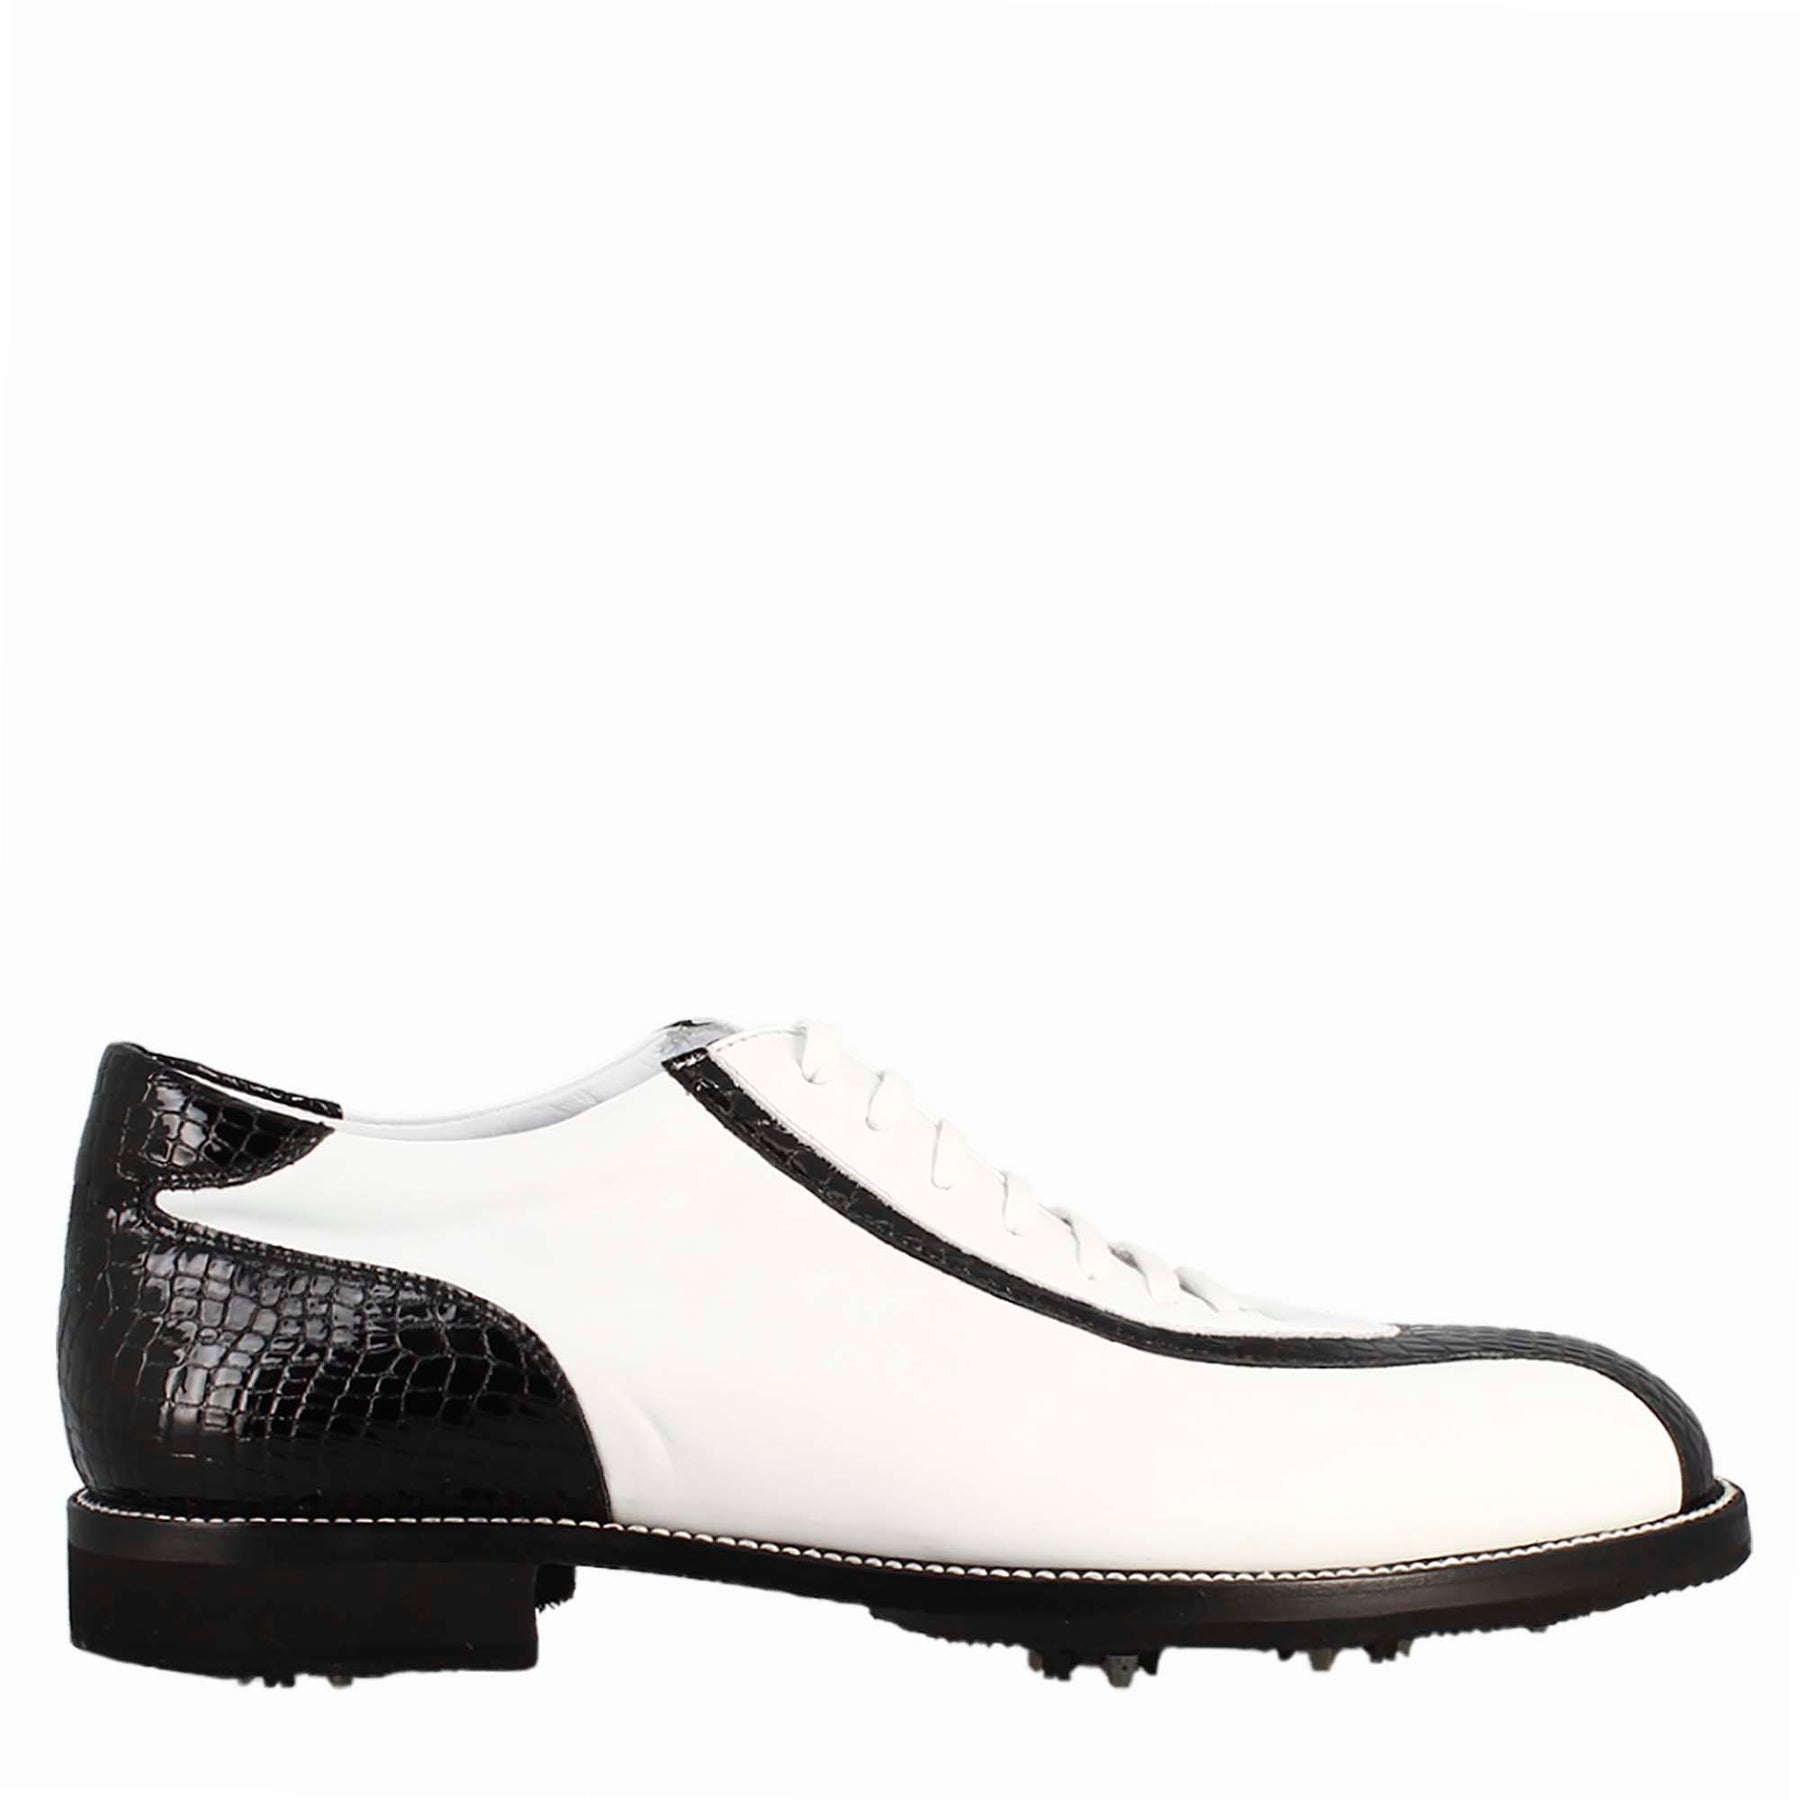 Scarpe golf da uomo artigianali in pelle bianco e dettagli in cocco nero